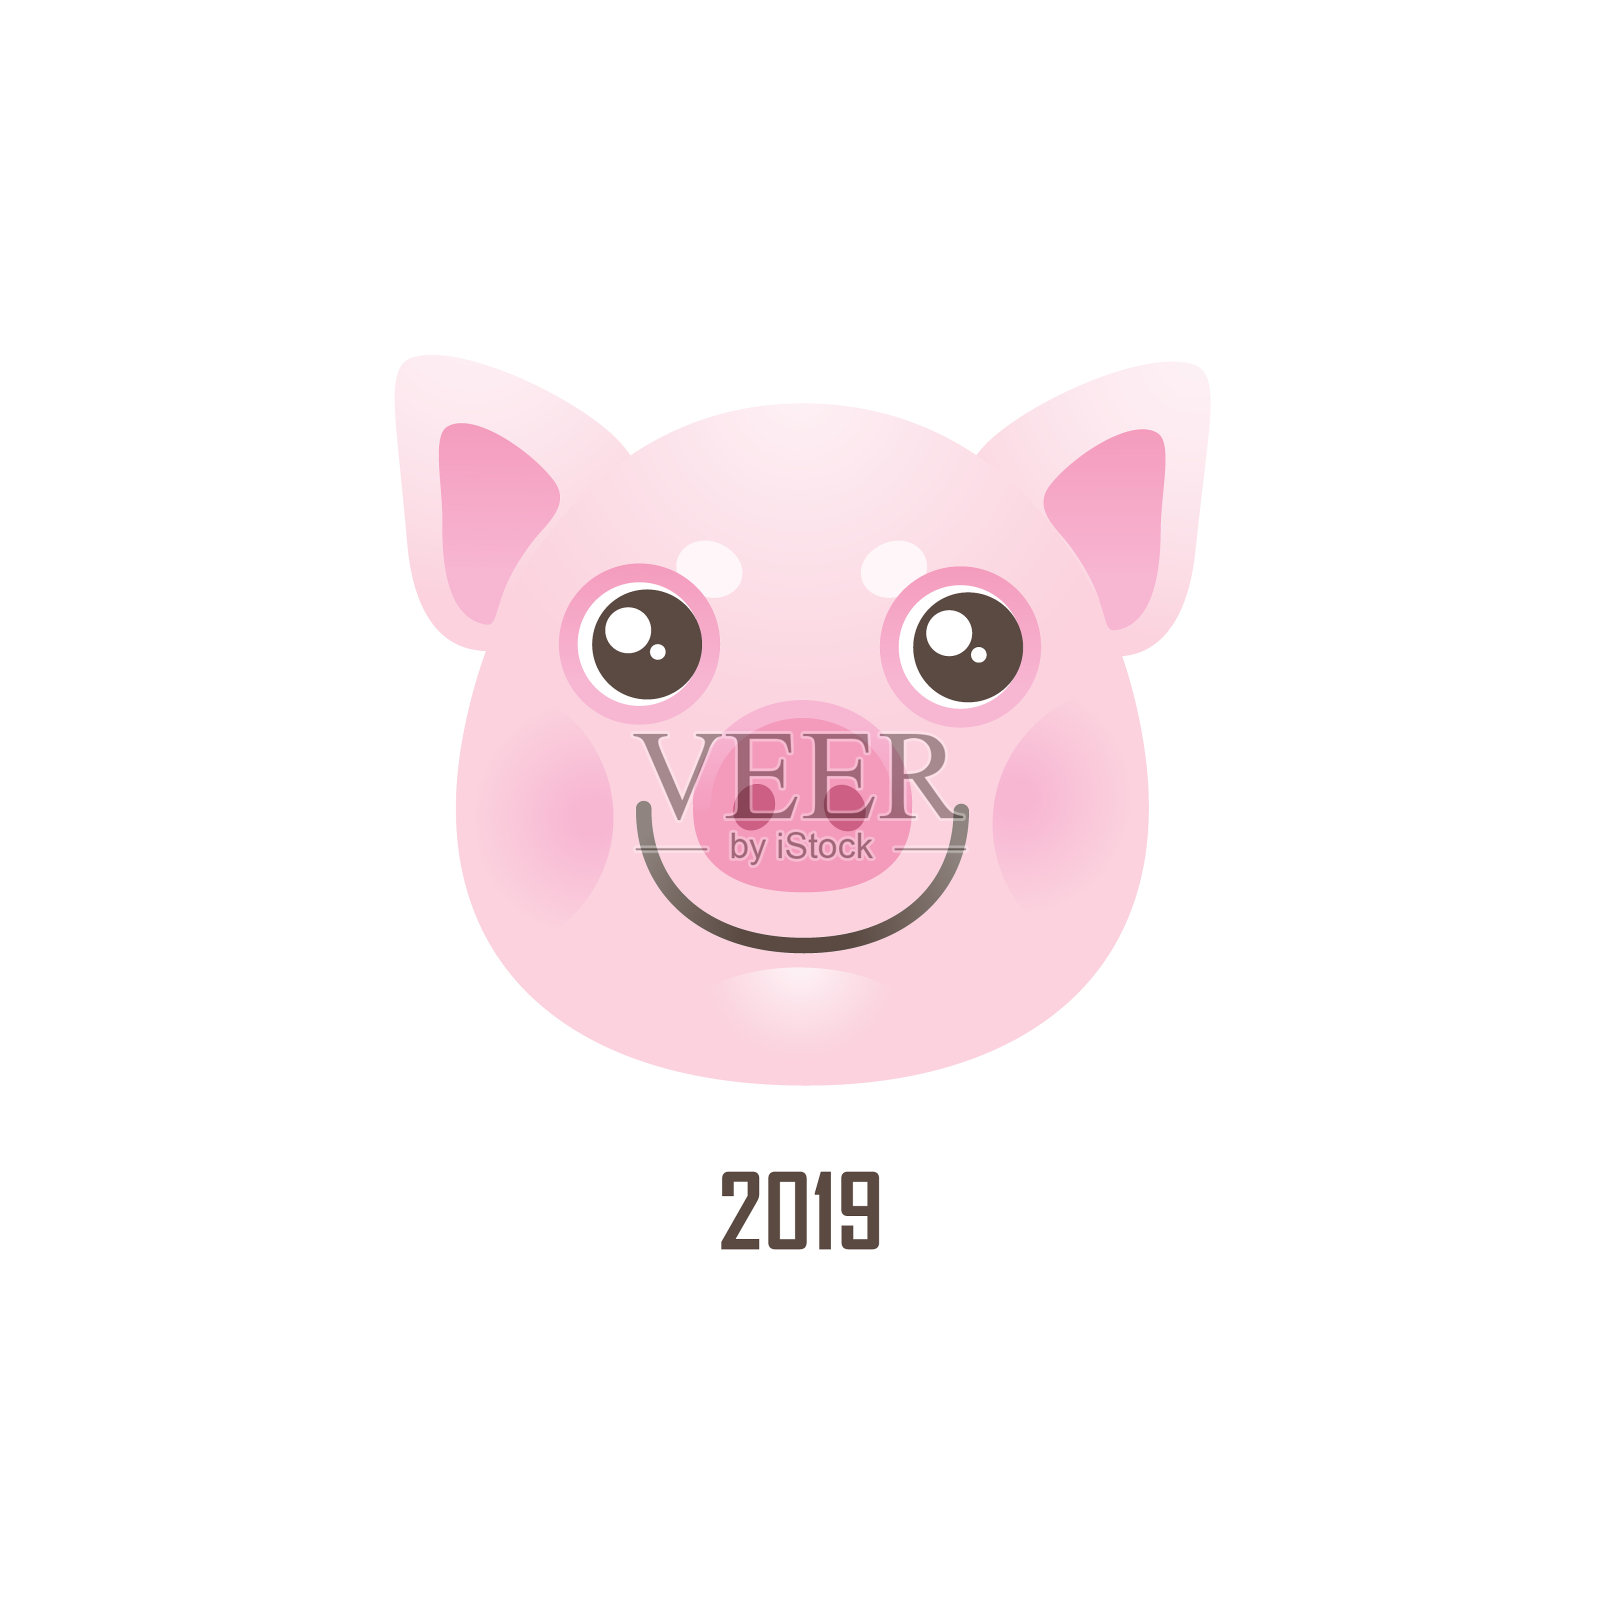 这是一只可爱的猪，象征着农历2019年。设计元素图片